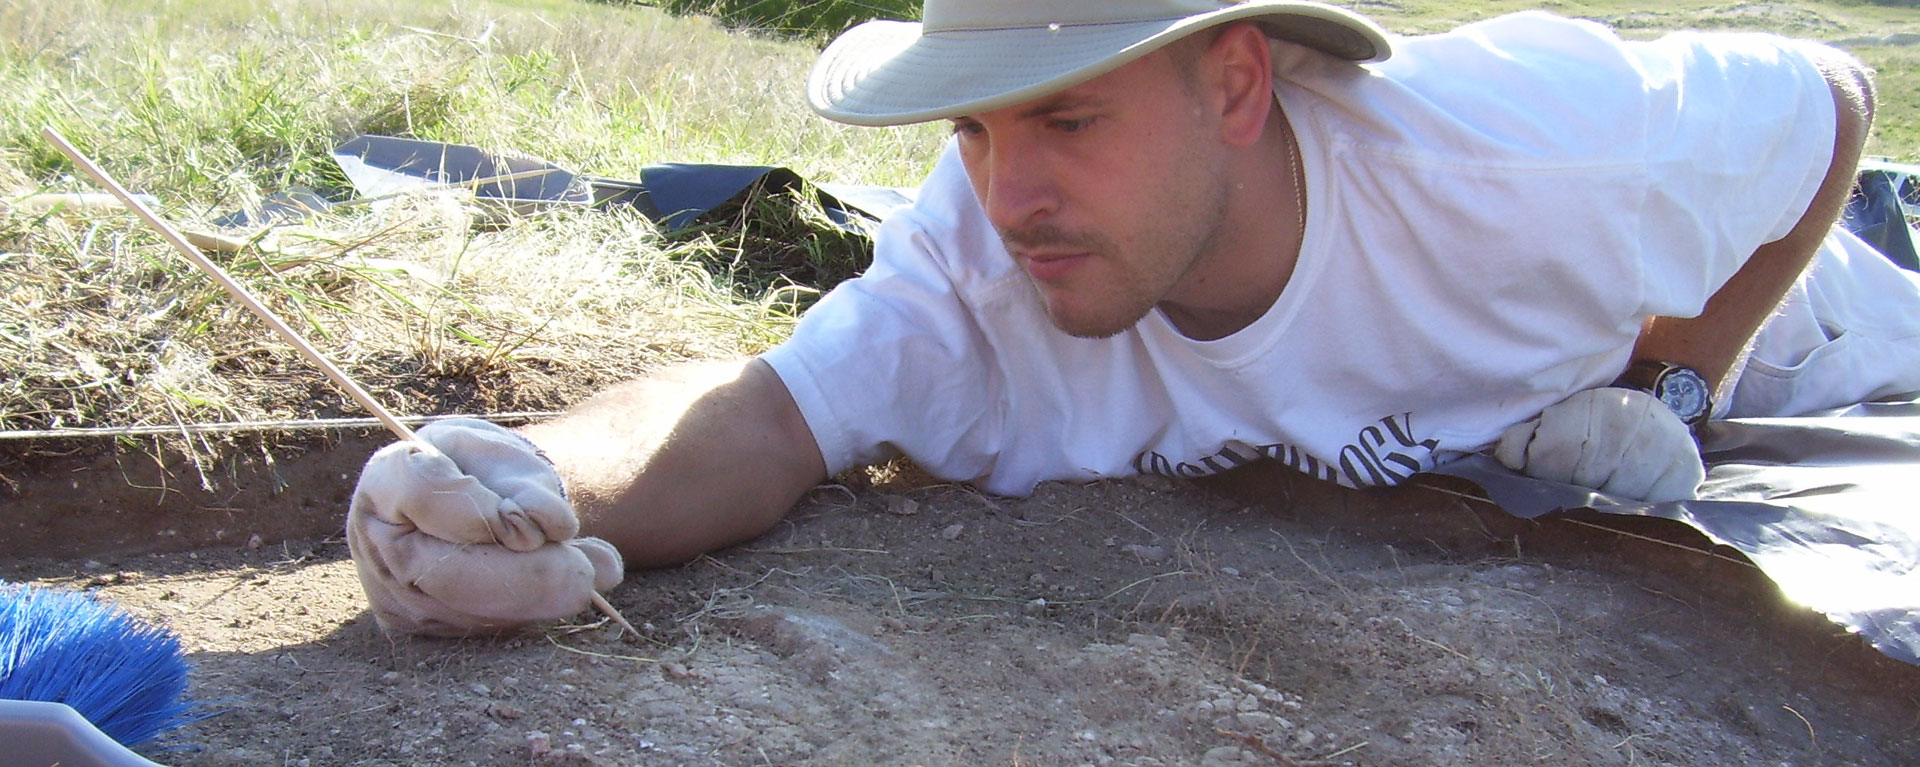 student digging at Nicodemus archeology dig